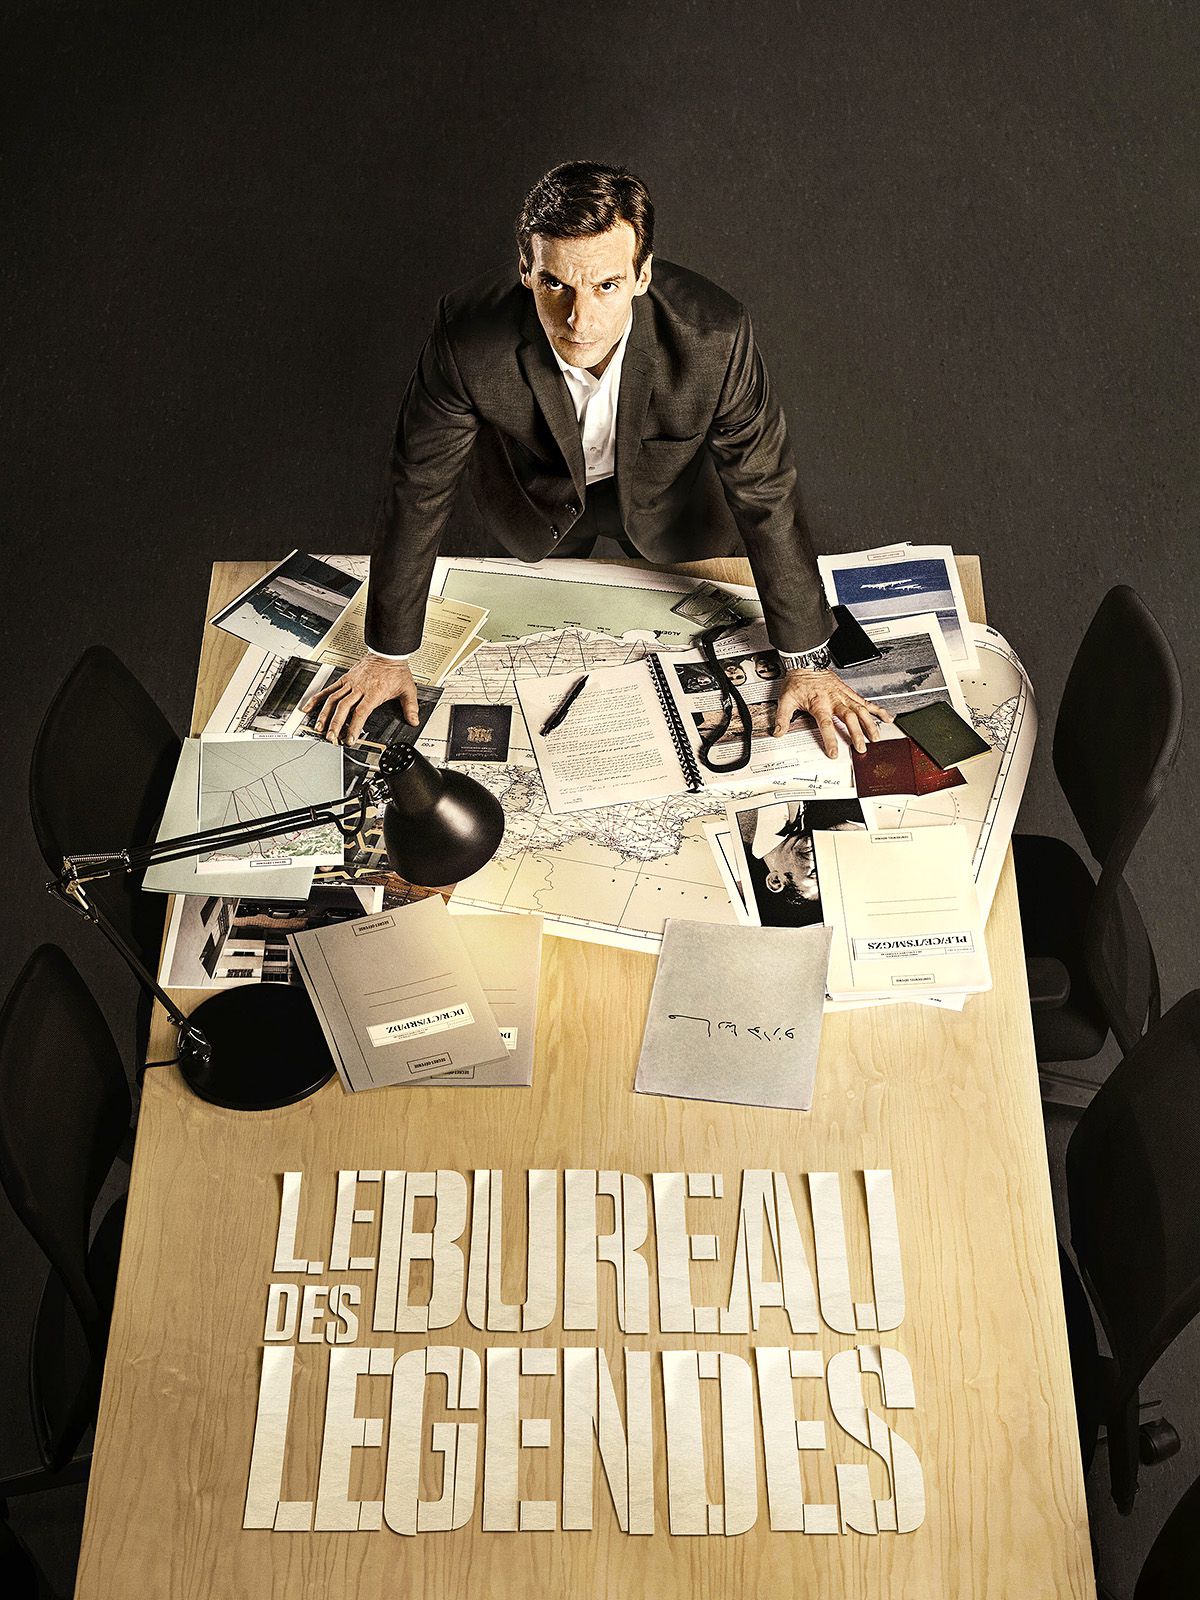 Le Bureau des Légendes - Série (2015) streaming VF gratuit complet